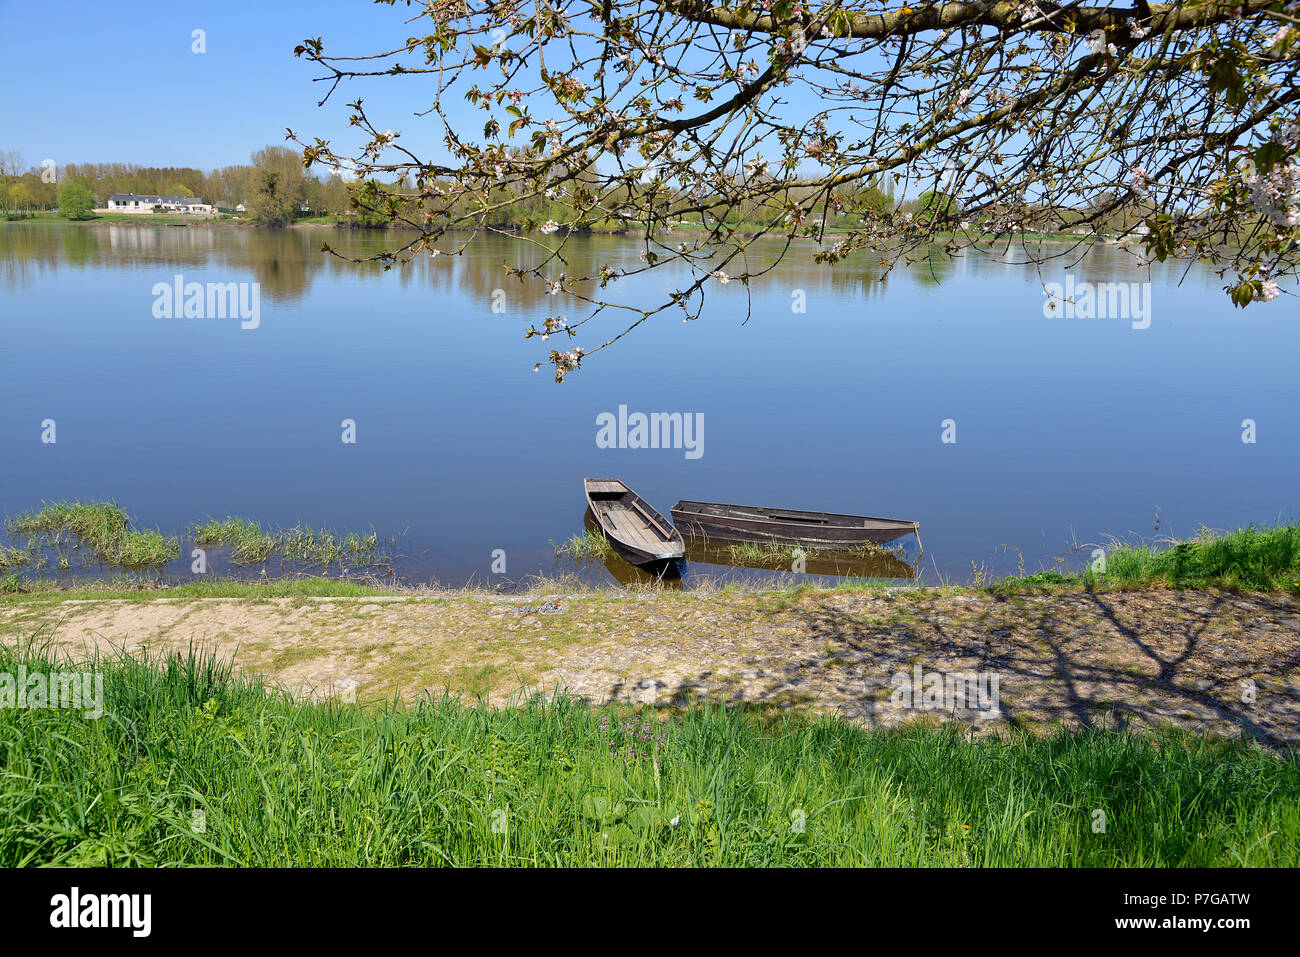 Die Ufer der Vienne in Candes-Saint-Martin mit Bäumen und kleinen Booten, französische Gemeinde im Département Indre-et-Loire, Region Centre in Frankreich. Stockfoto